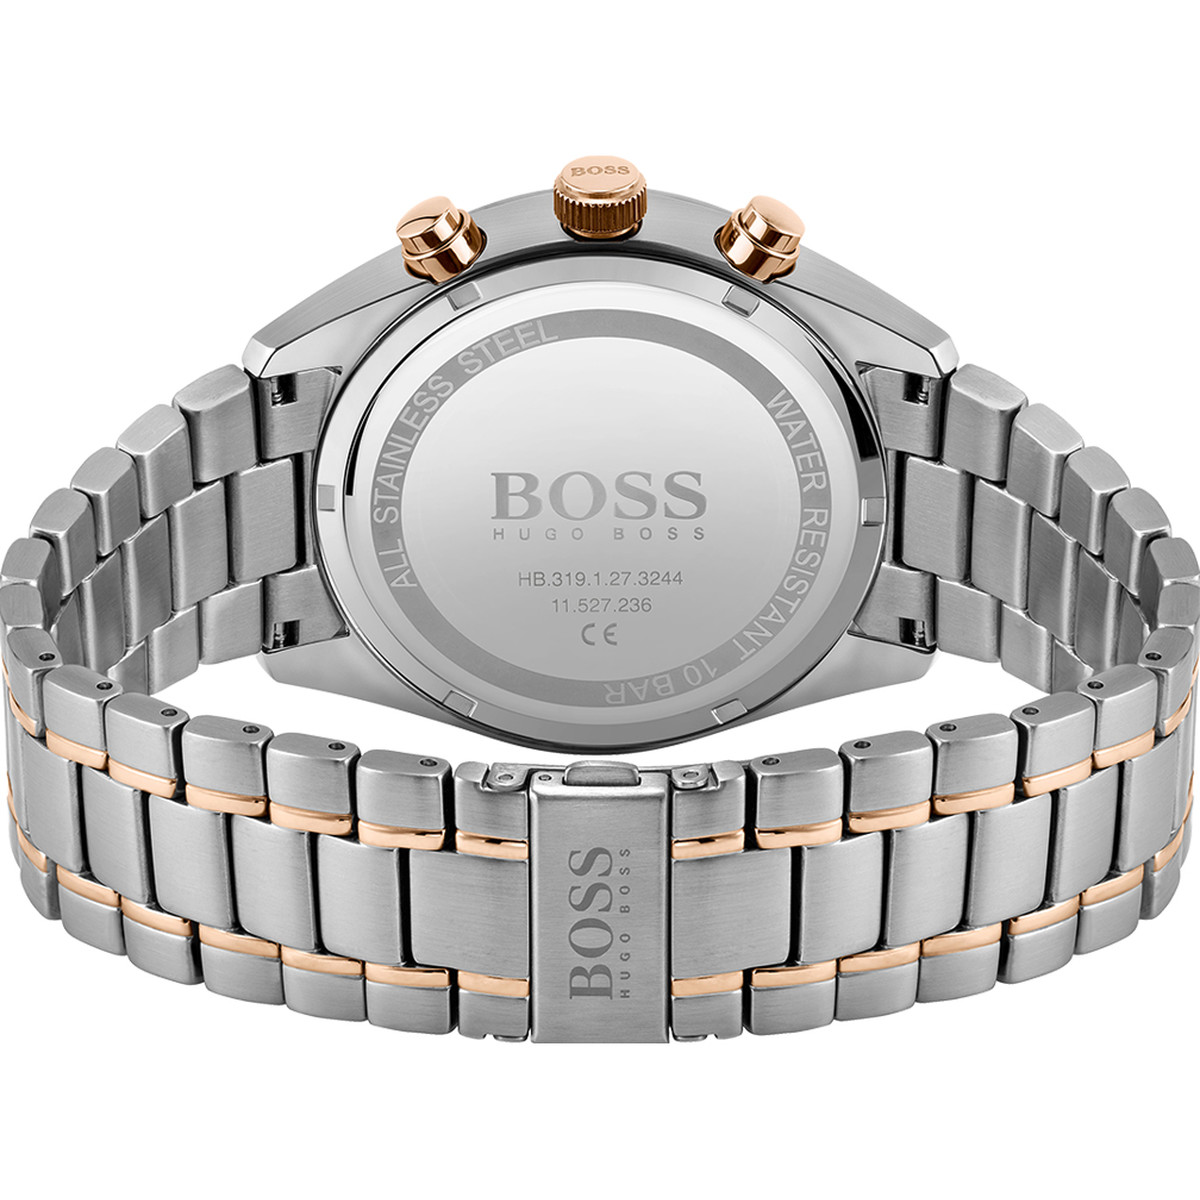 Montre Boss homme bracelet acier bicolore rose - vue 3